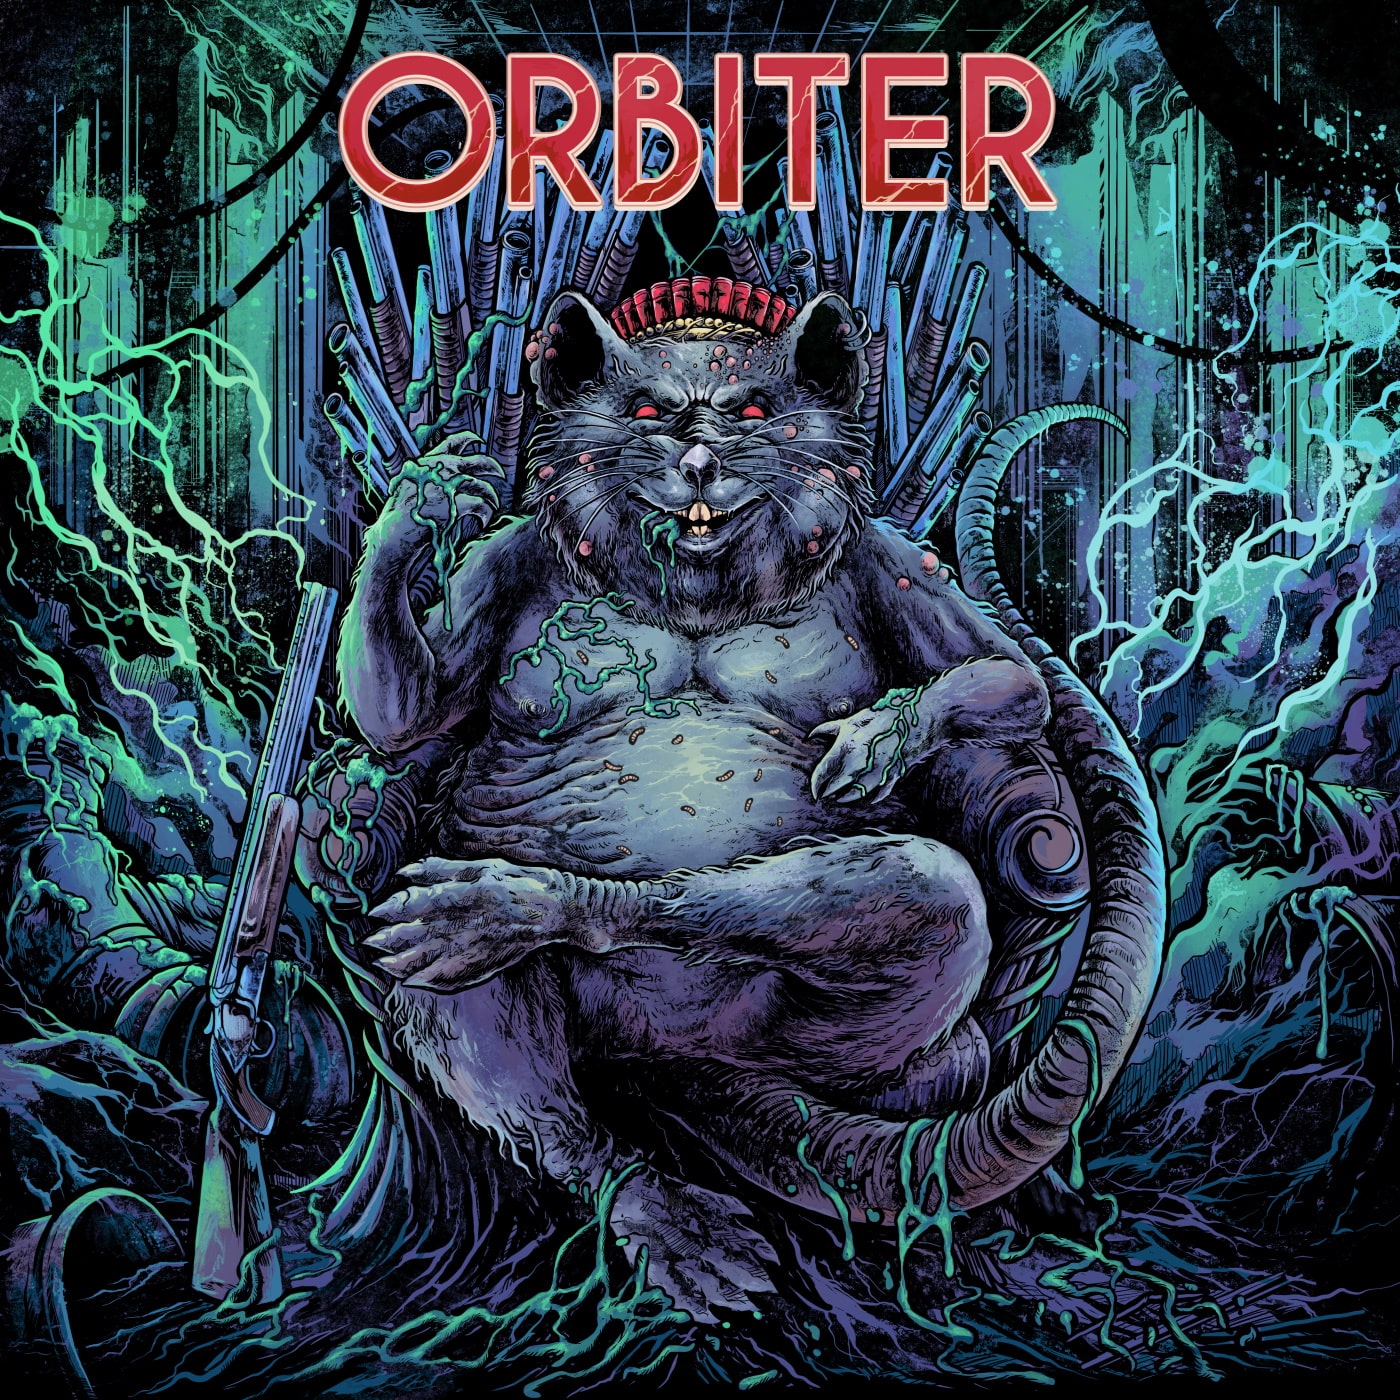 Orbiter Lead Head EP cover min